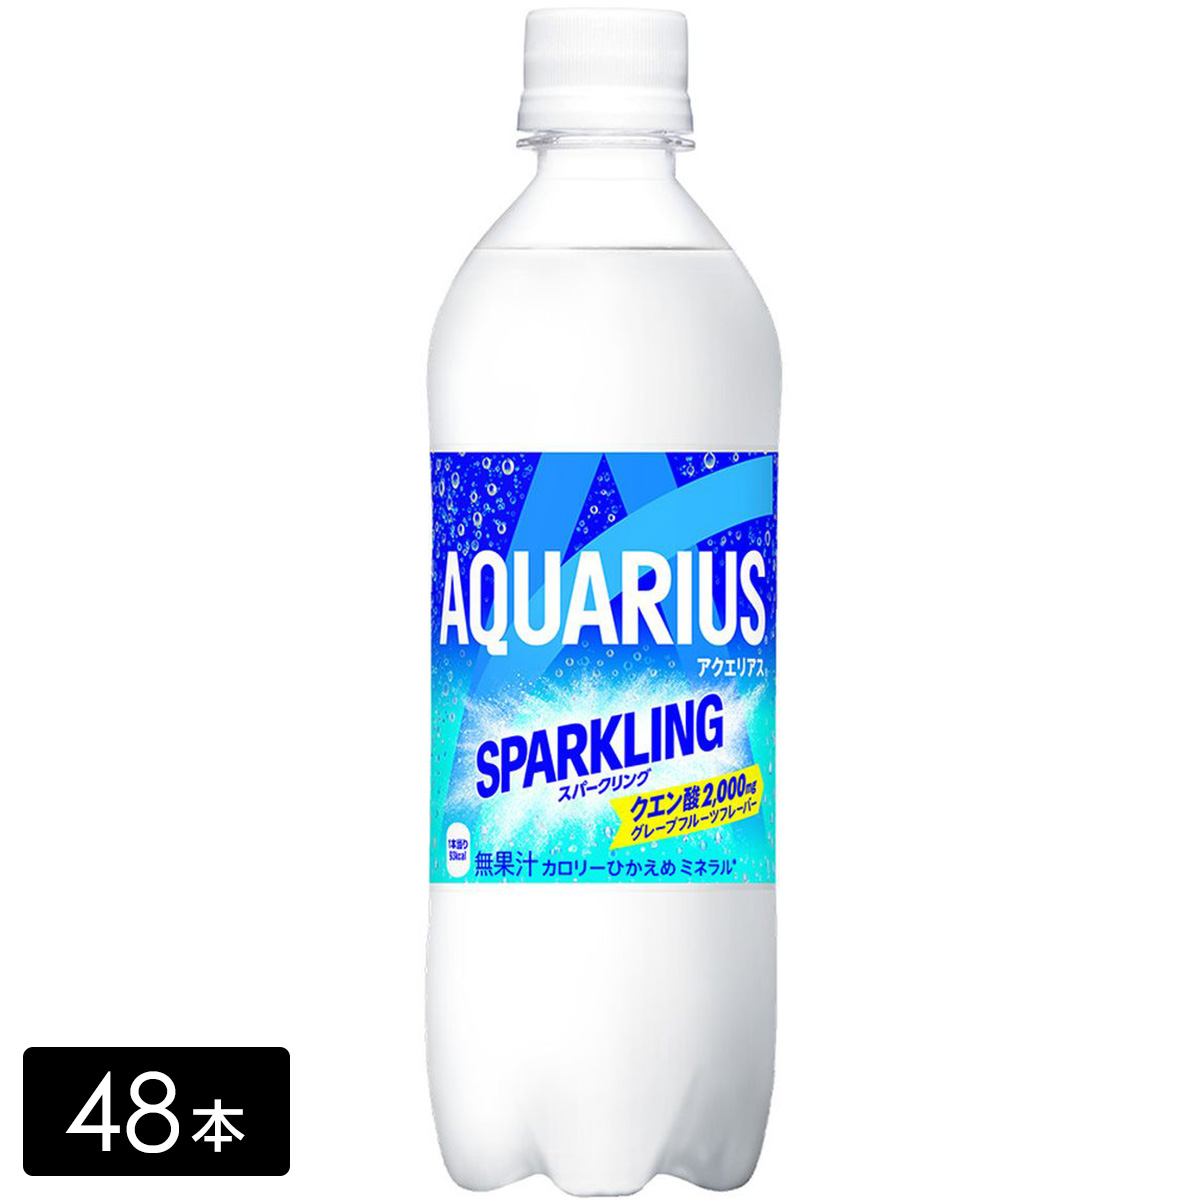 [送料無料]アクエリアス スパークリング 490ml×48本(24本×2箱) 炭酸飲料 熱中症対策 水分補給 AQUARIUS ペットボトル ケース売り まとめ買い